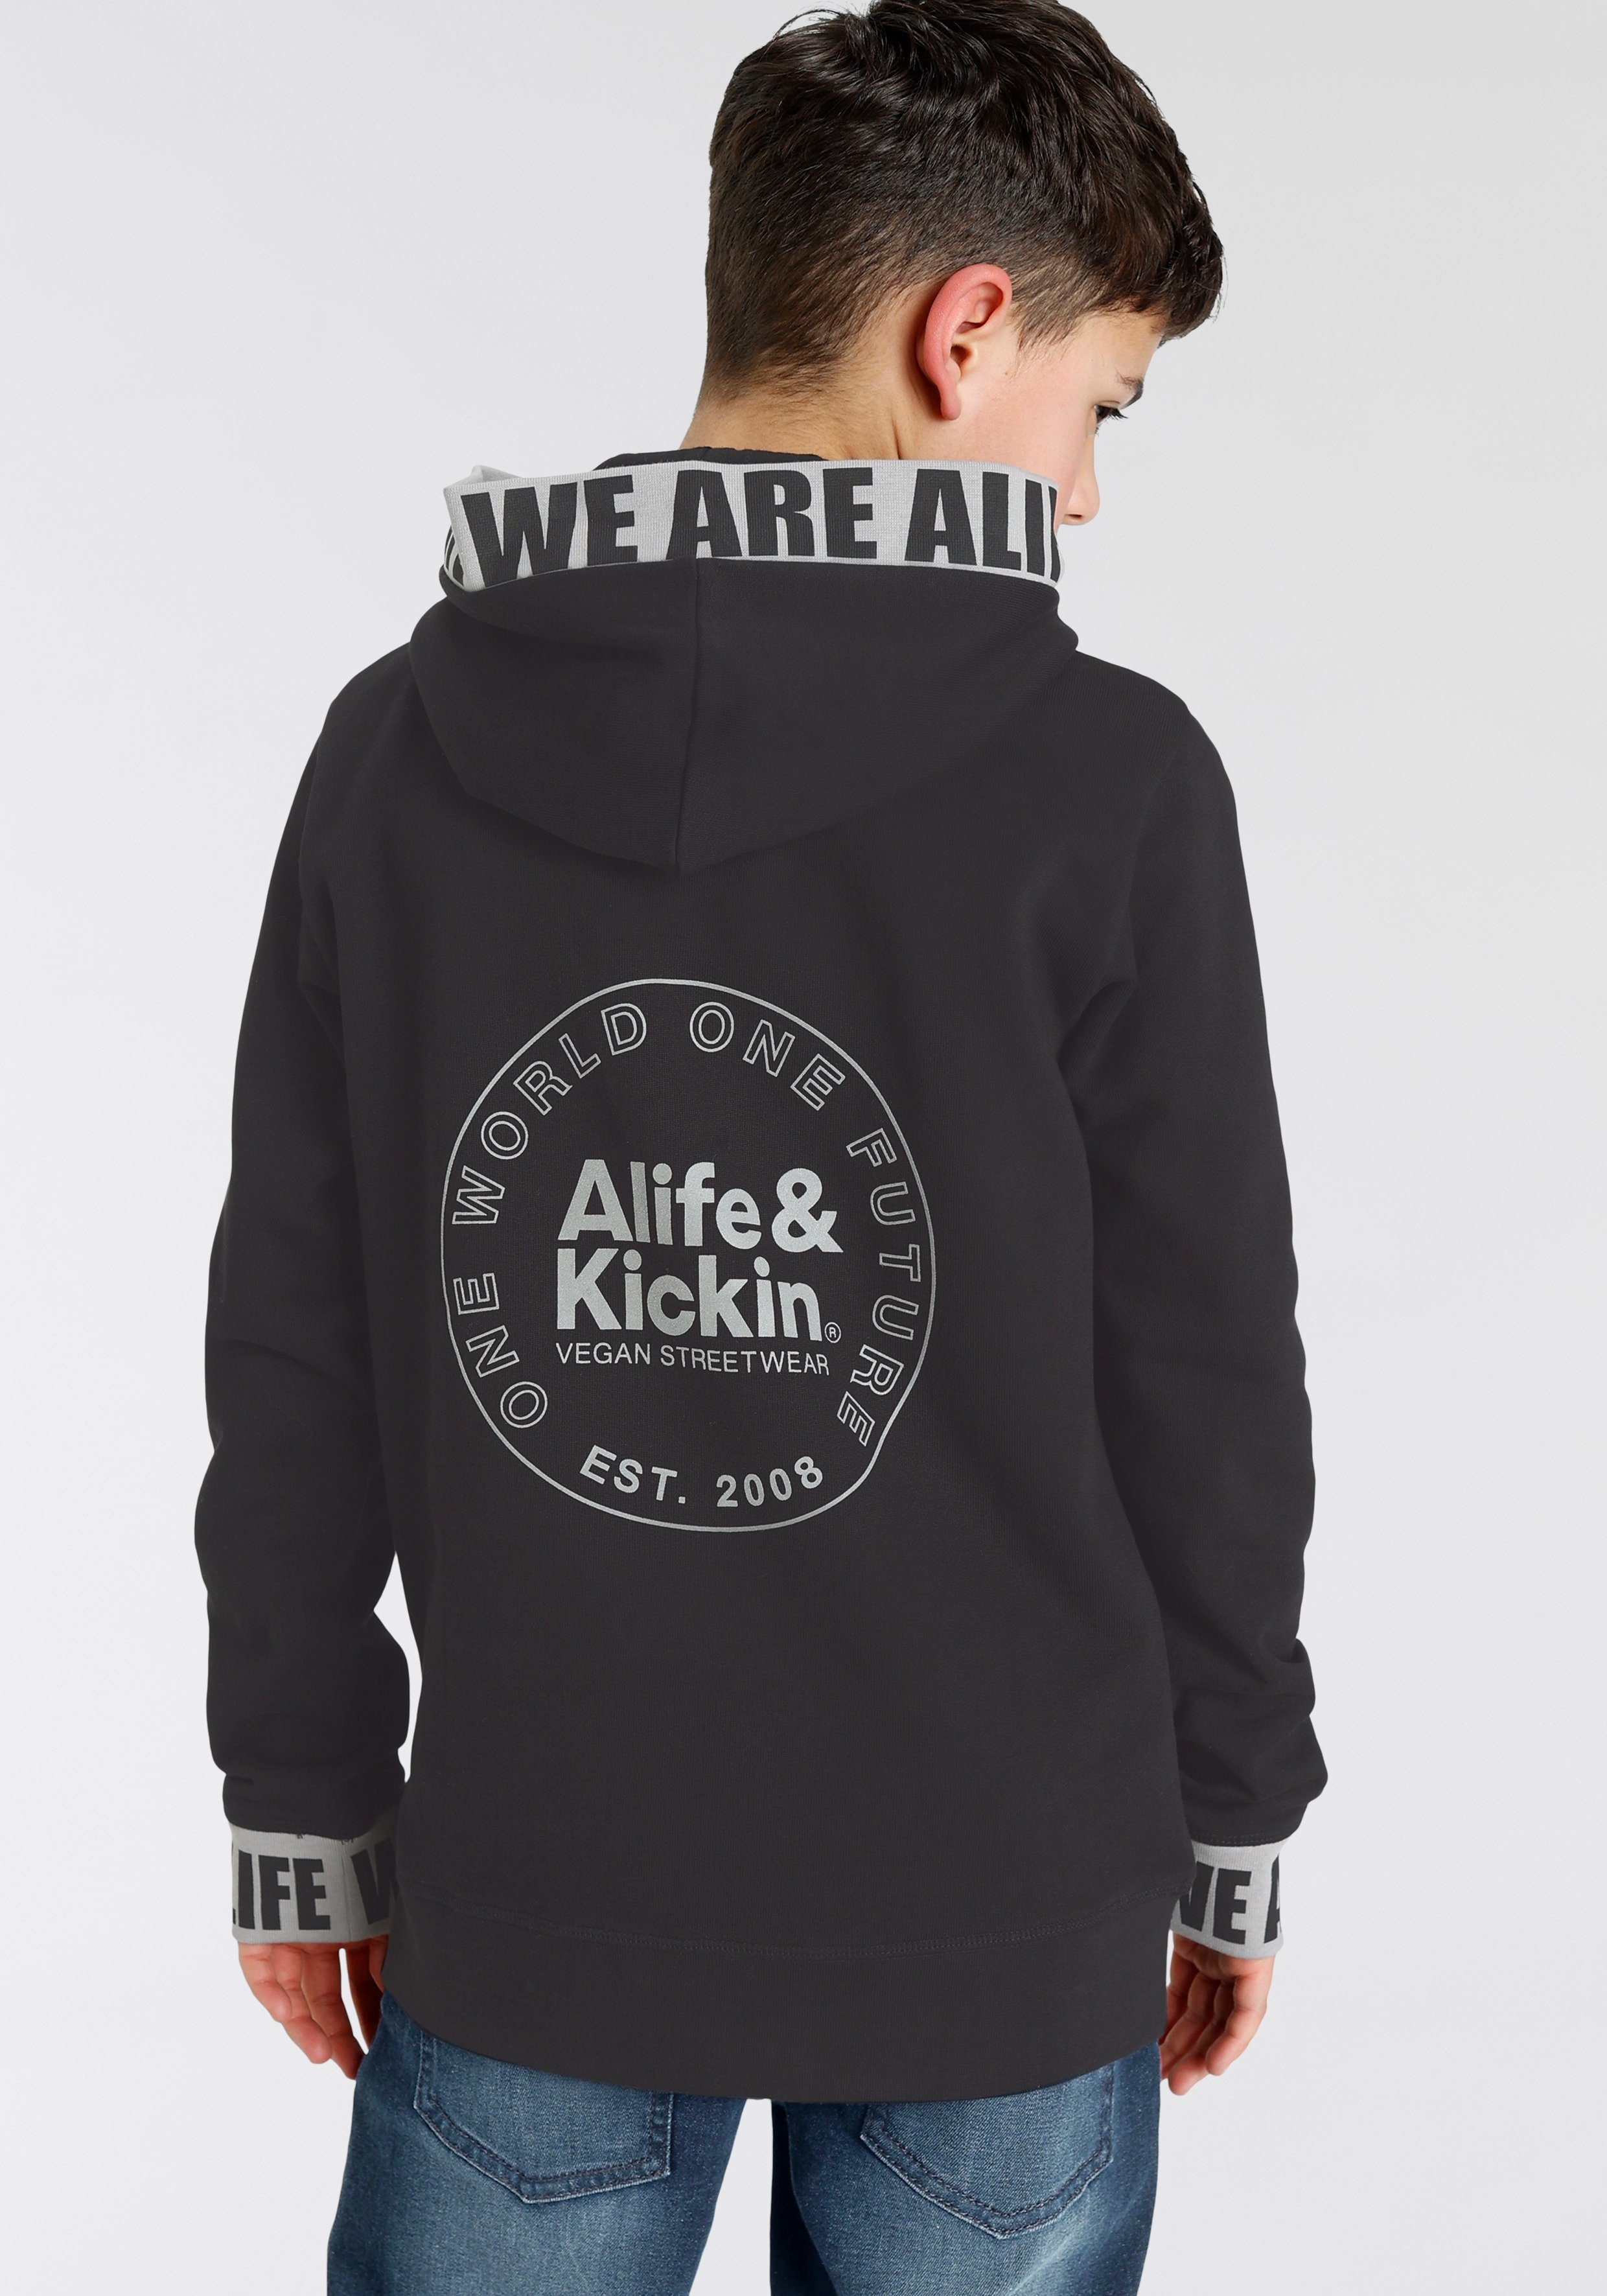 NEUE Kickin beschrifteten & und Rückenprint Bündchen, Kapuzensweatshirt Alife MARKE!